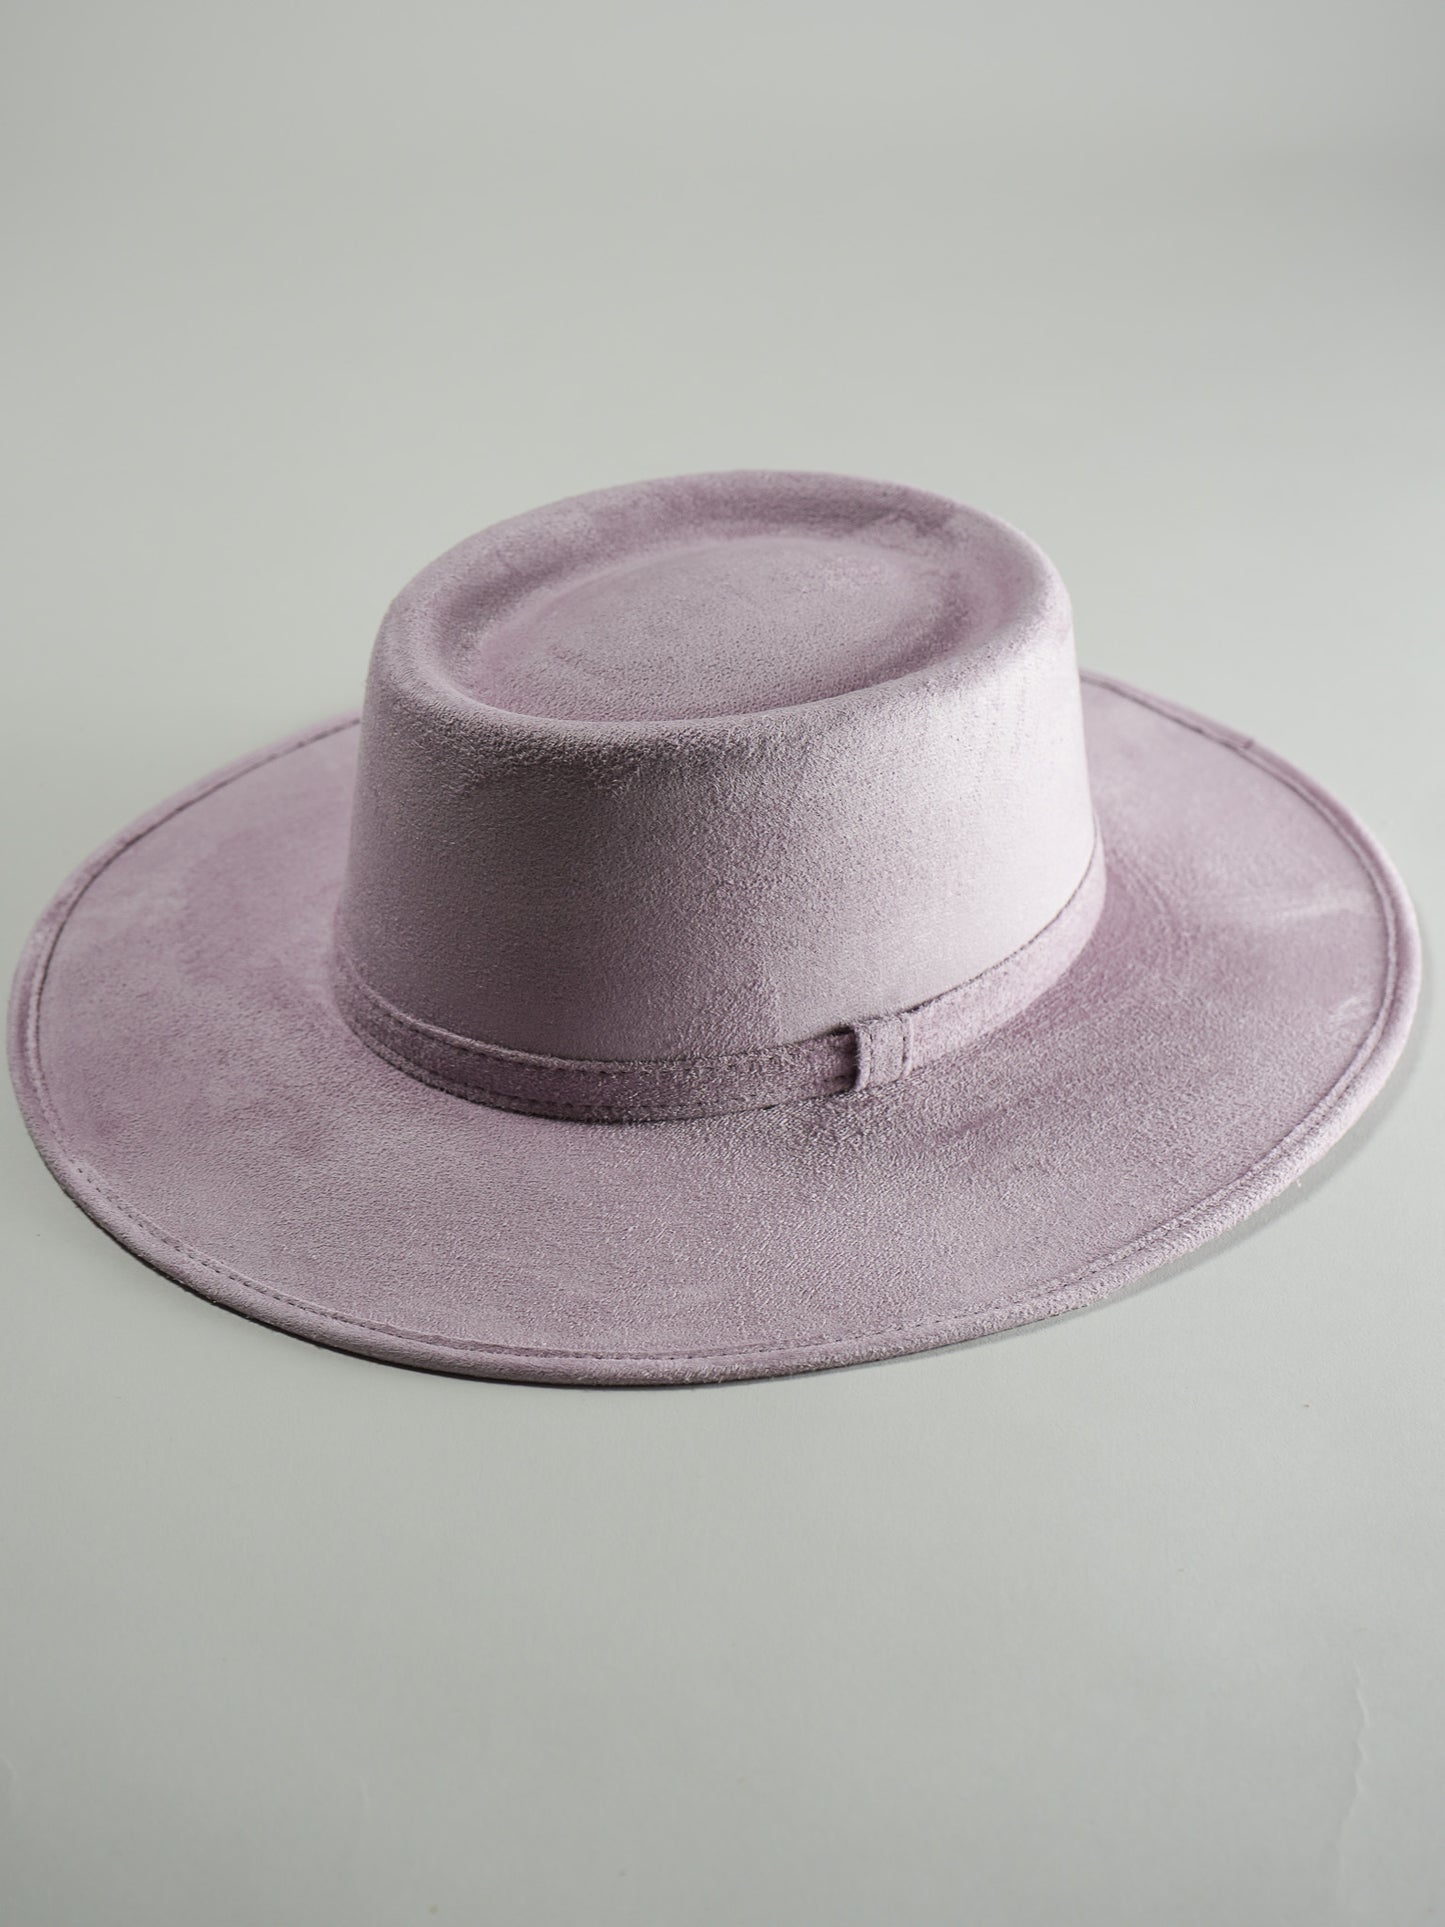 Vegan Suede Boater Hat- Lavender